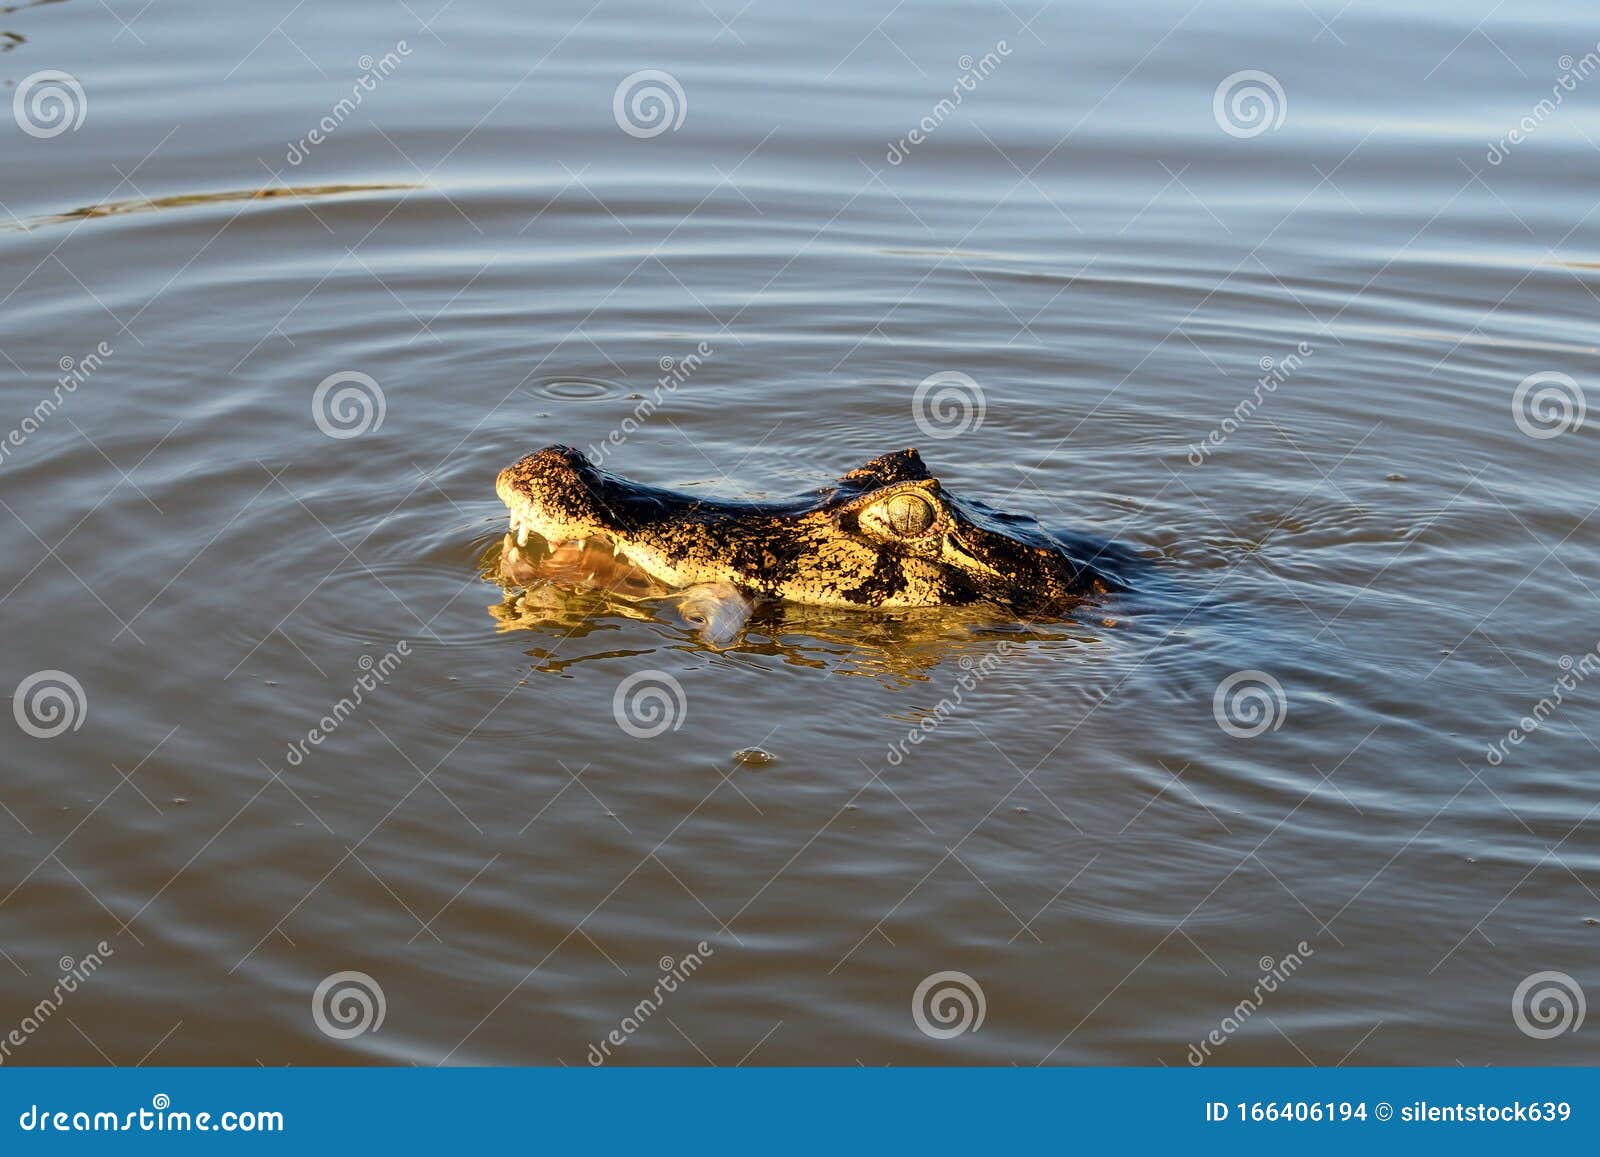 jacare caiman in rio cuiaba, pantanal, brazil.